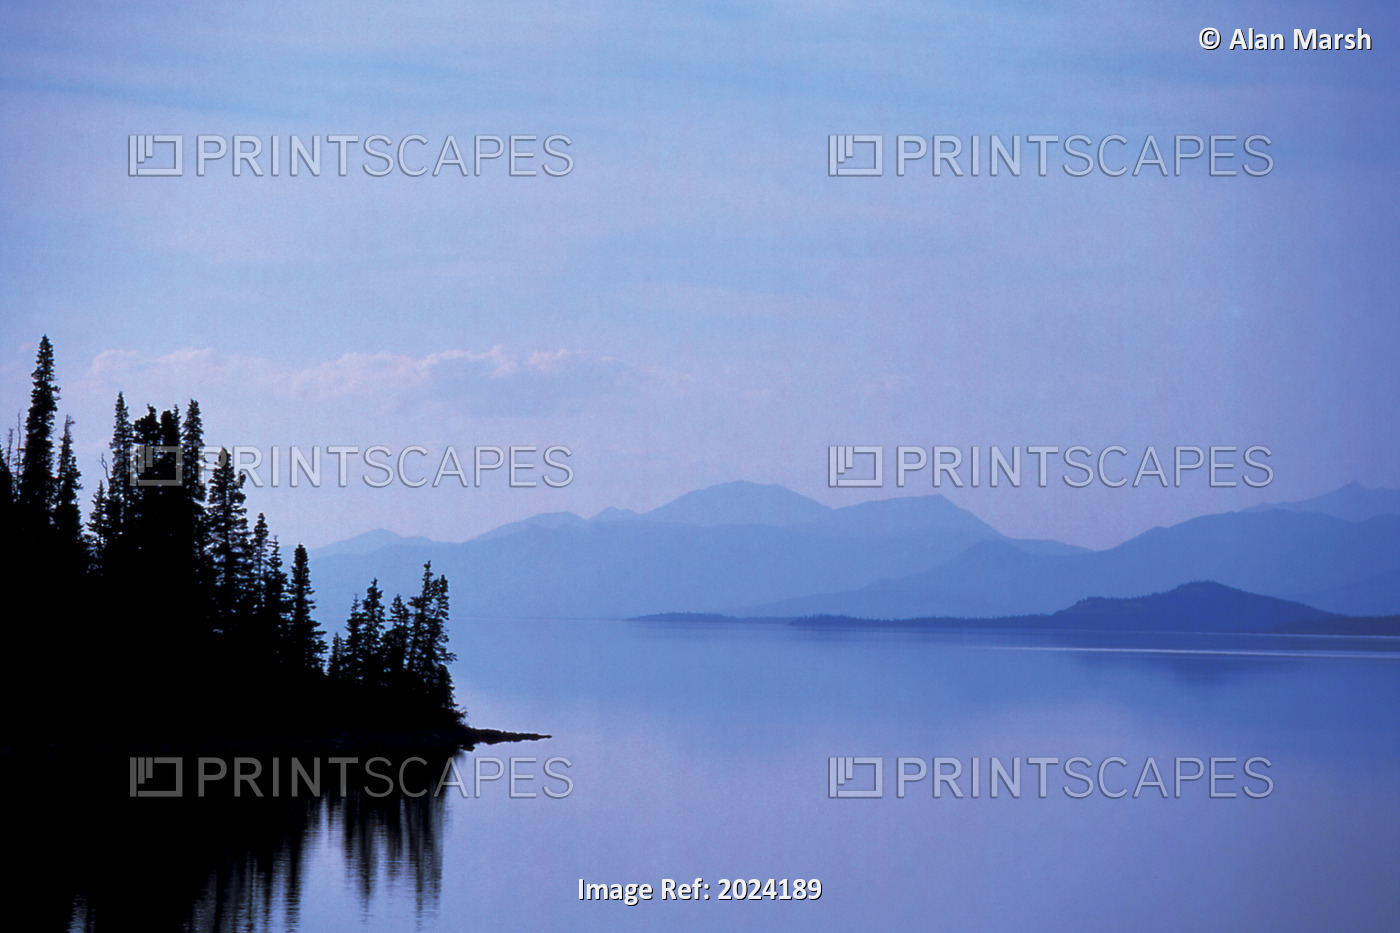 Kluane Lake, Kluane National Park, Yukon, Canada